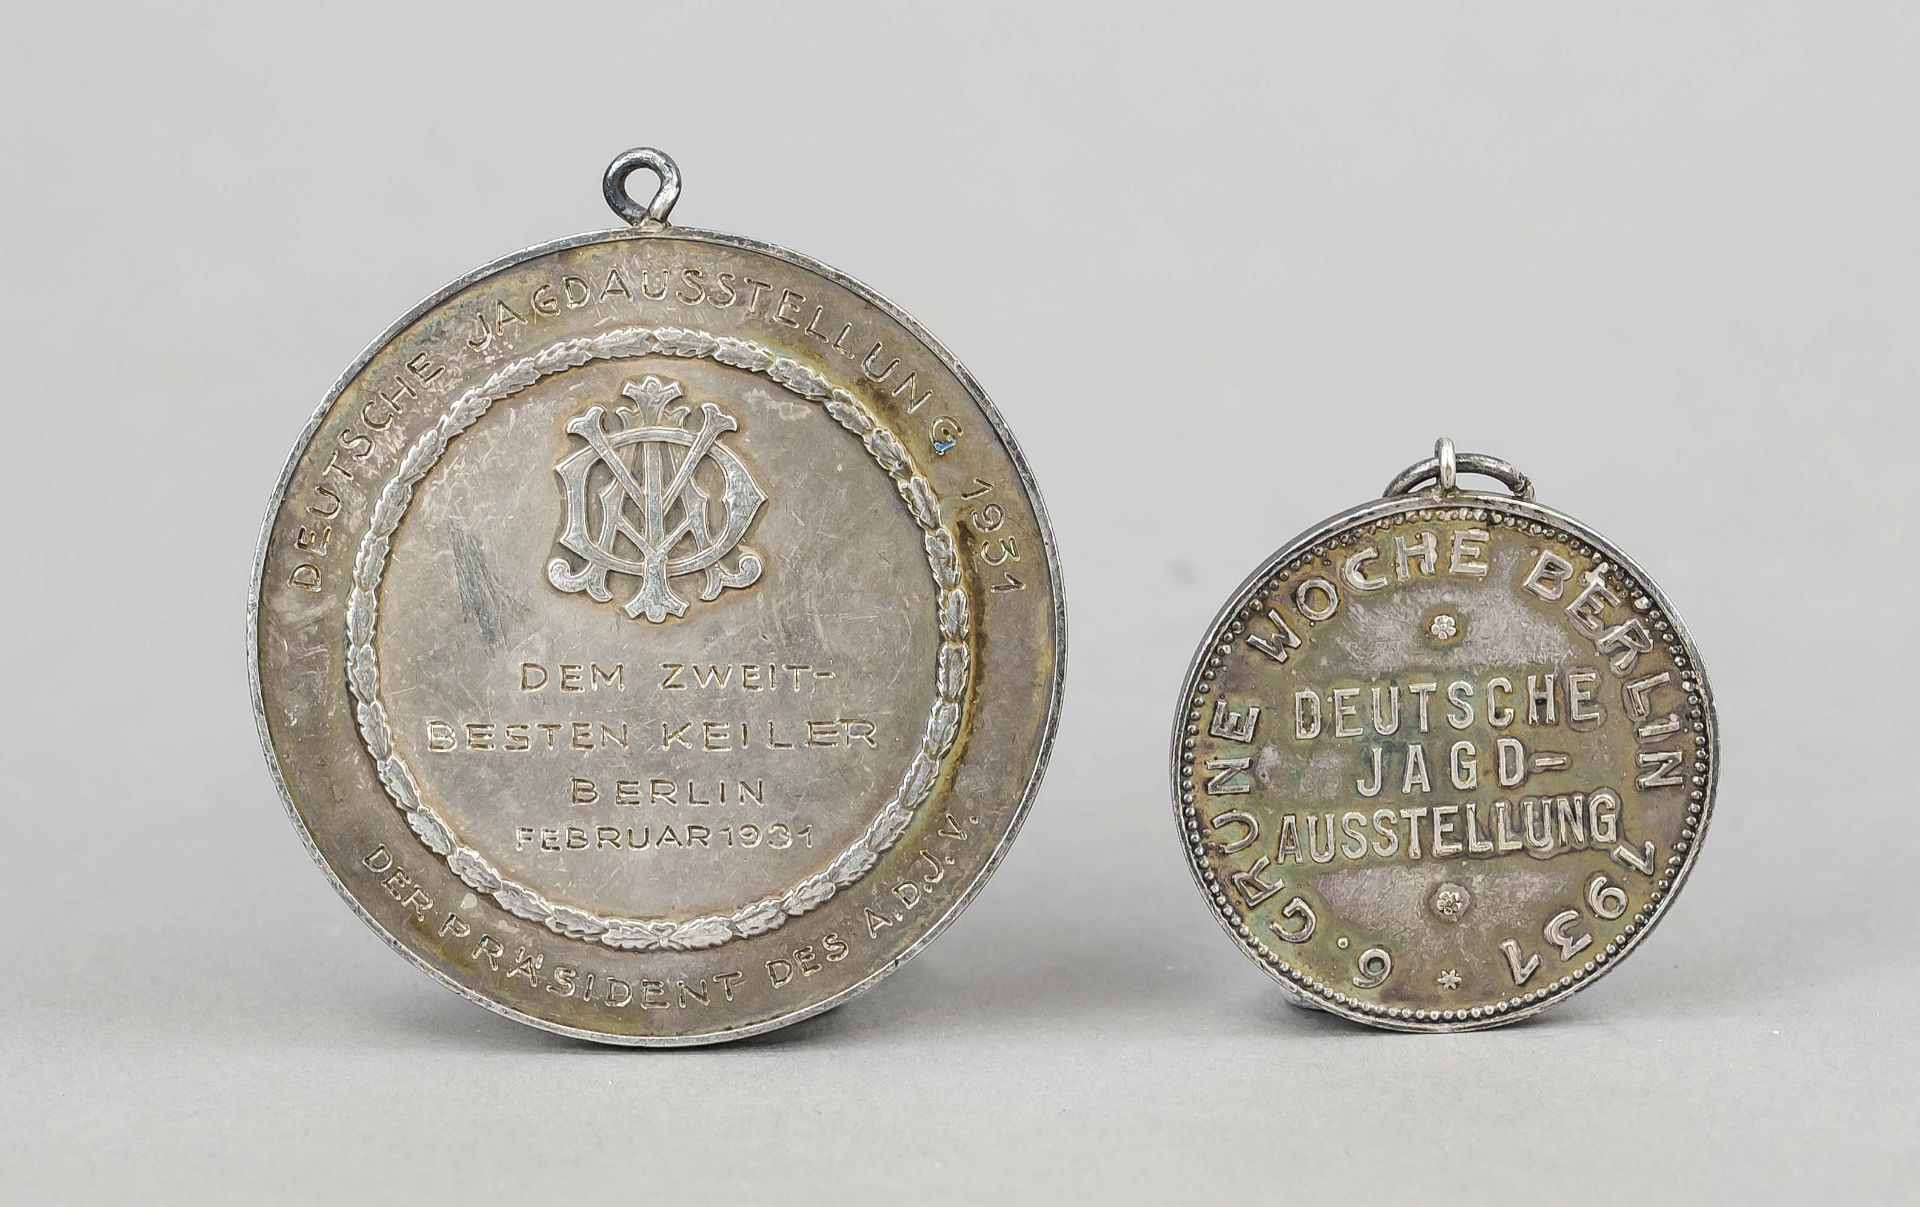 2 Berlin hunting medals, 1930s, silver sieves One from ''Allgemeiner Deutscher Jagdschutzverein - Image 2 of 2